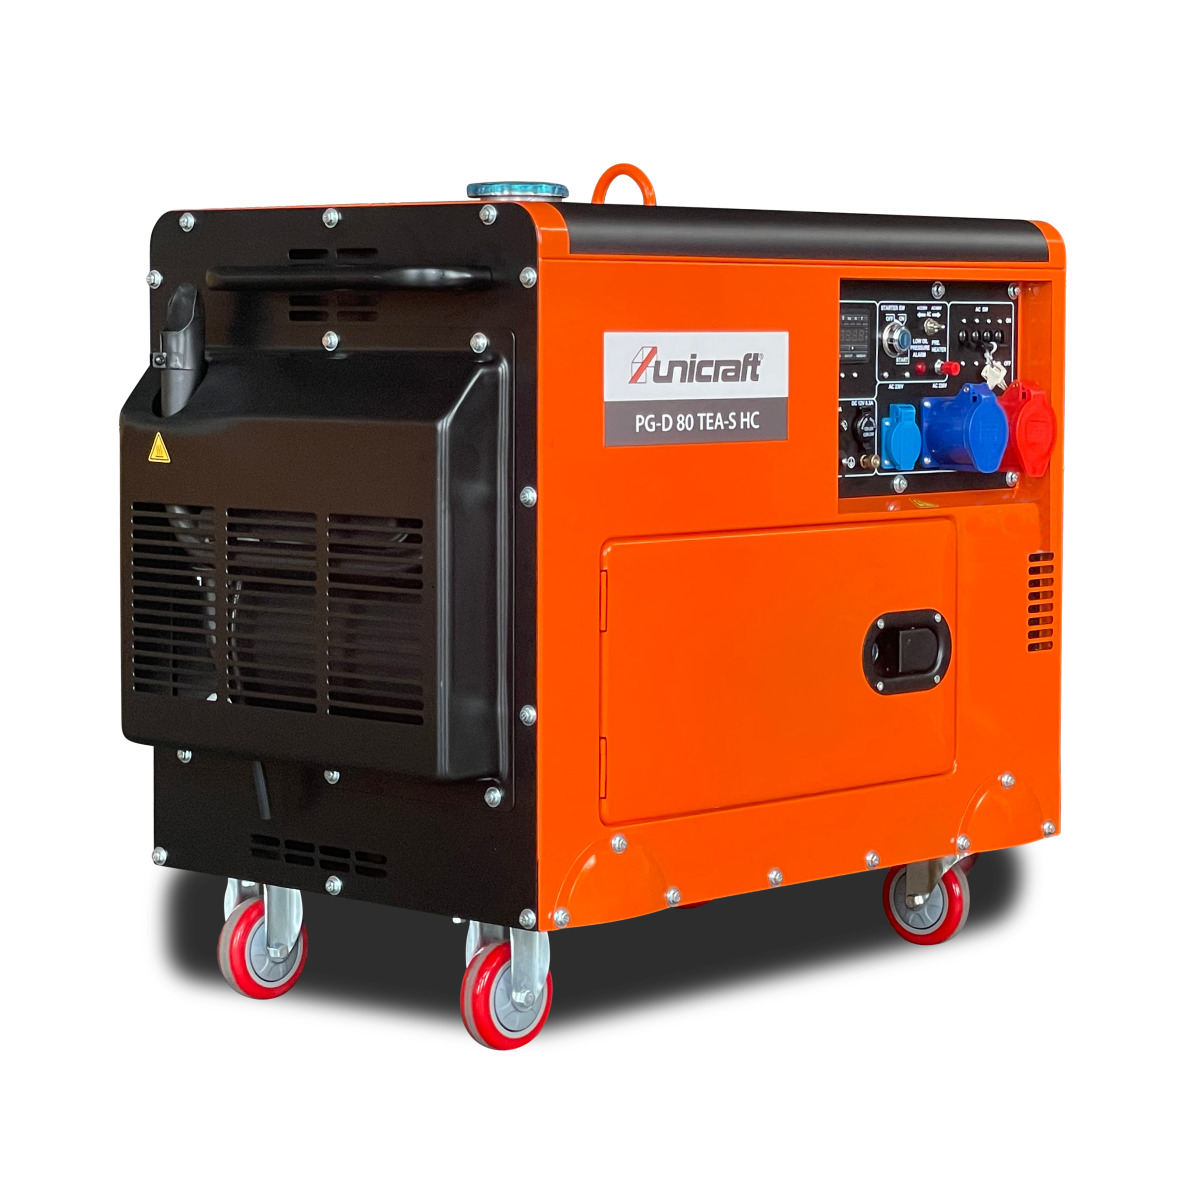  Unicraft Synchron Diesel Stromerzeuger PG-D 80 TEA-S HC, für die Hauseinspeisung geeignet 